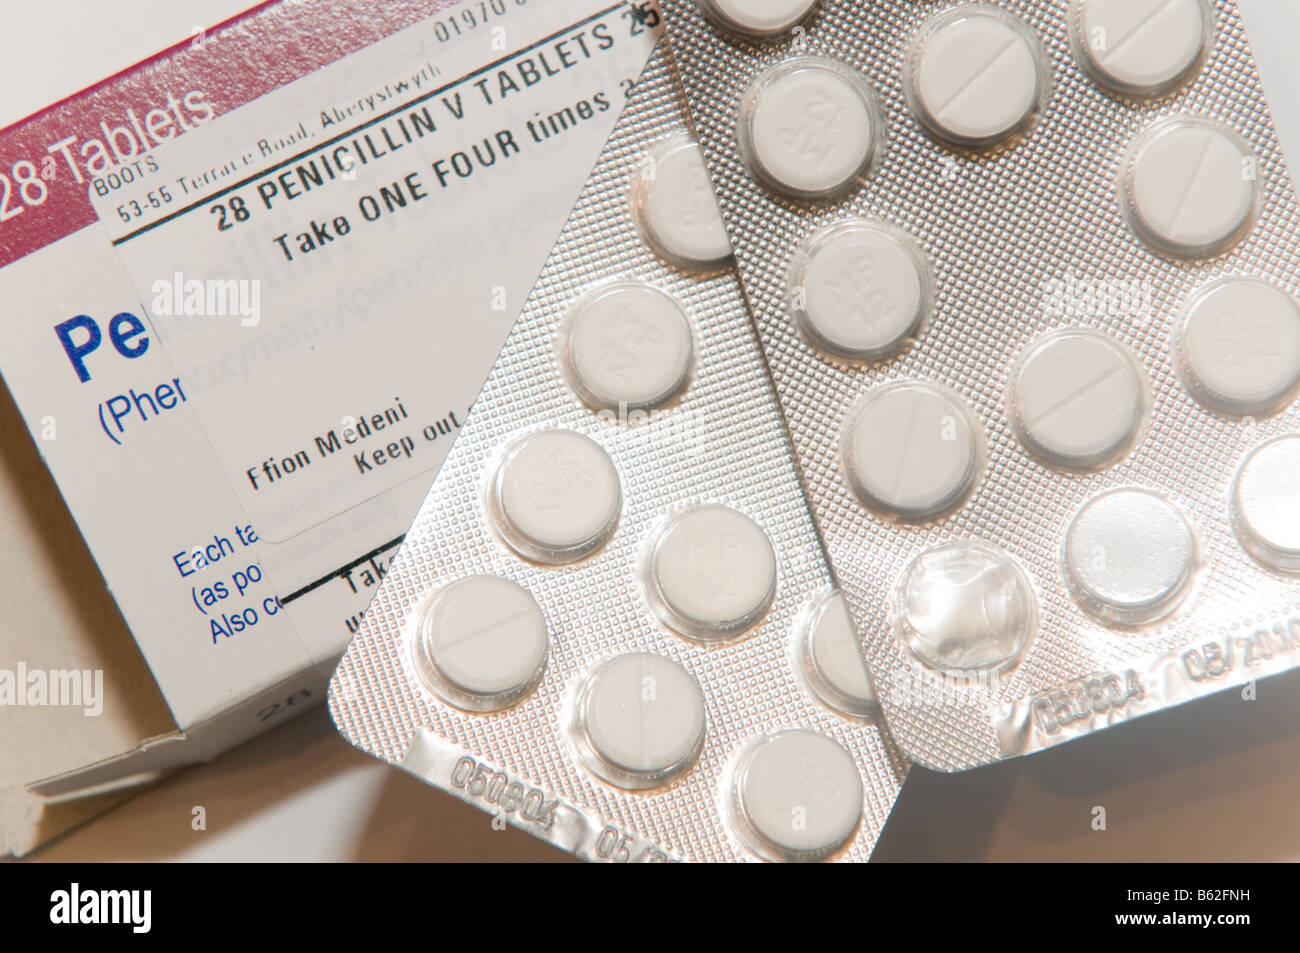 Eine Blisterpackung der Penicillin-Antibiotika-Tabletten von National Health Service NHS Uk ausgestellt Stockfoto